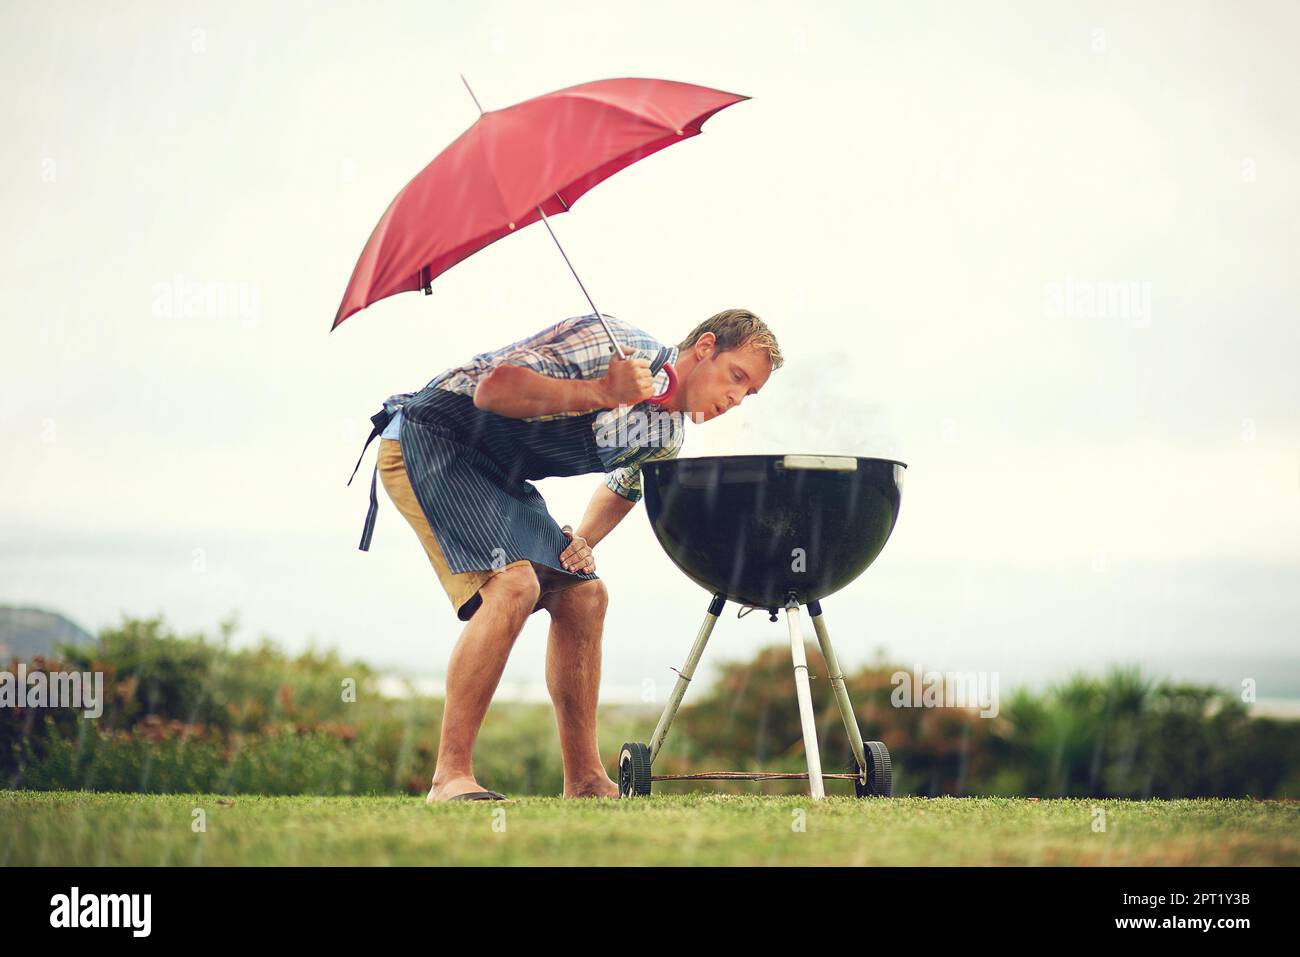 Wer sagt, Braaing ist immer leicht. Ein Mann, der draußen im Regen grillt, während er einen Schirm hält und das Feuer aufbläst Stockfoto